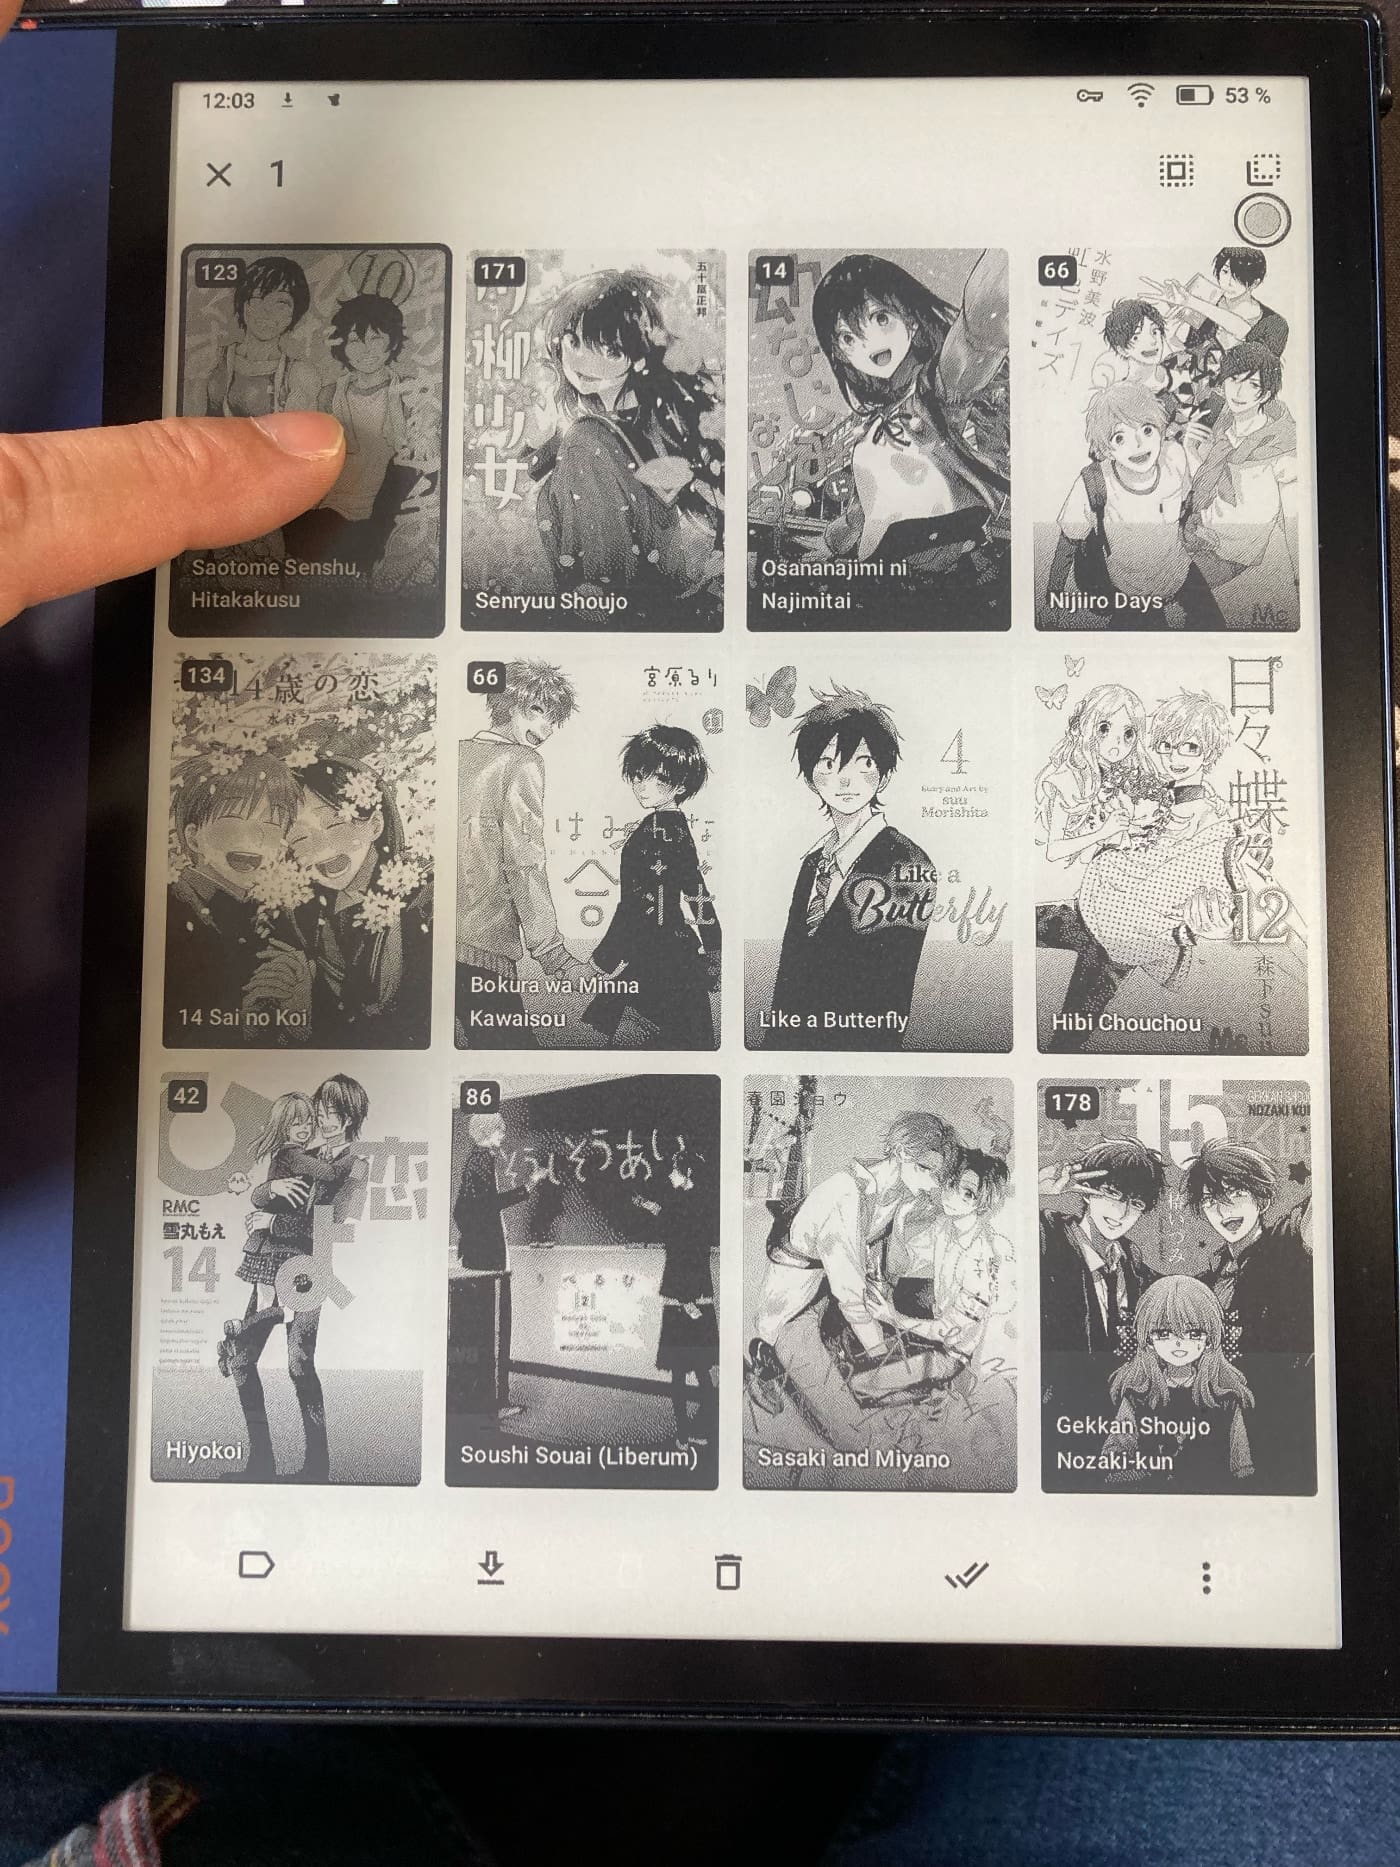 Migrando fuentes desde la Biblioteca de TachiyomiSY: seleccionamos mangas